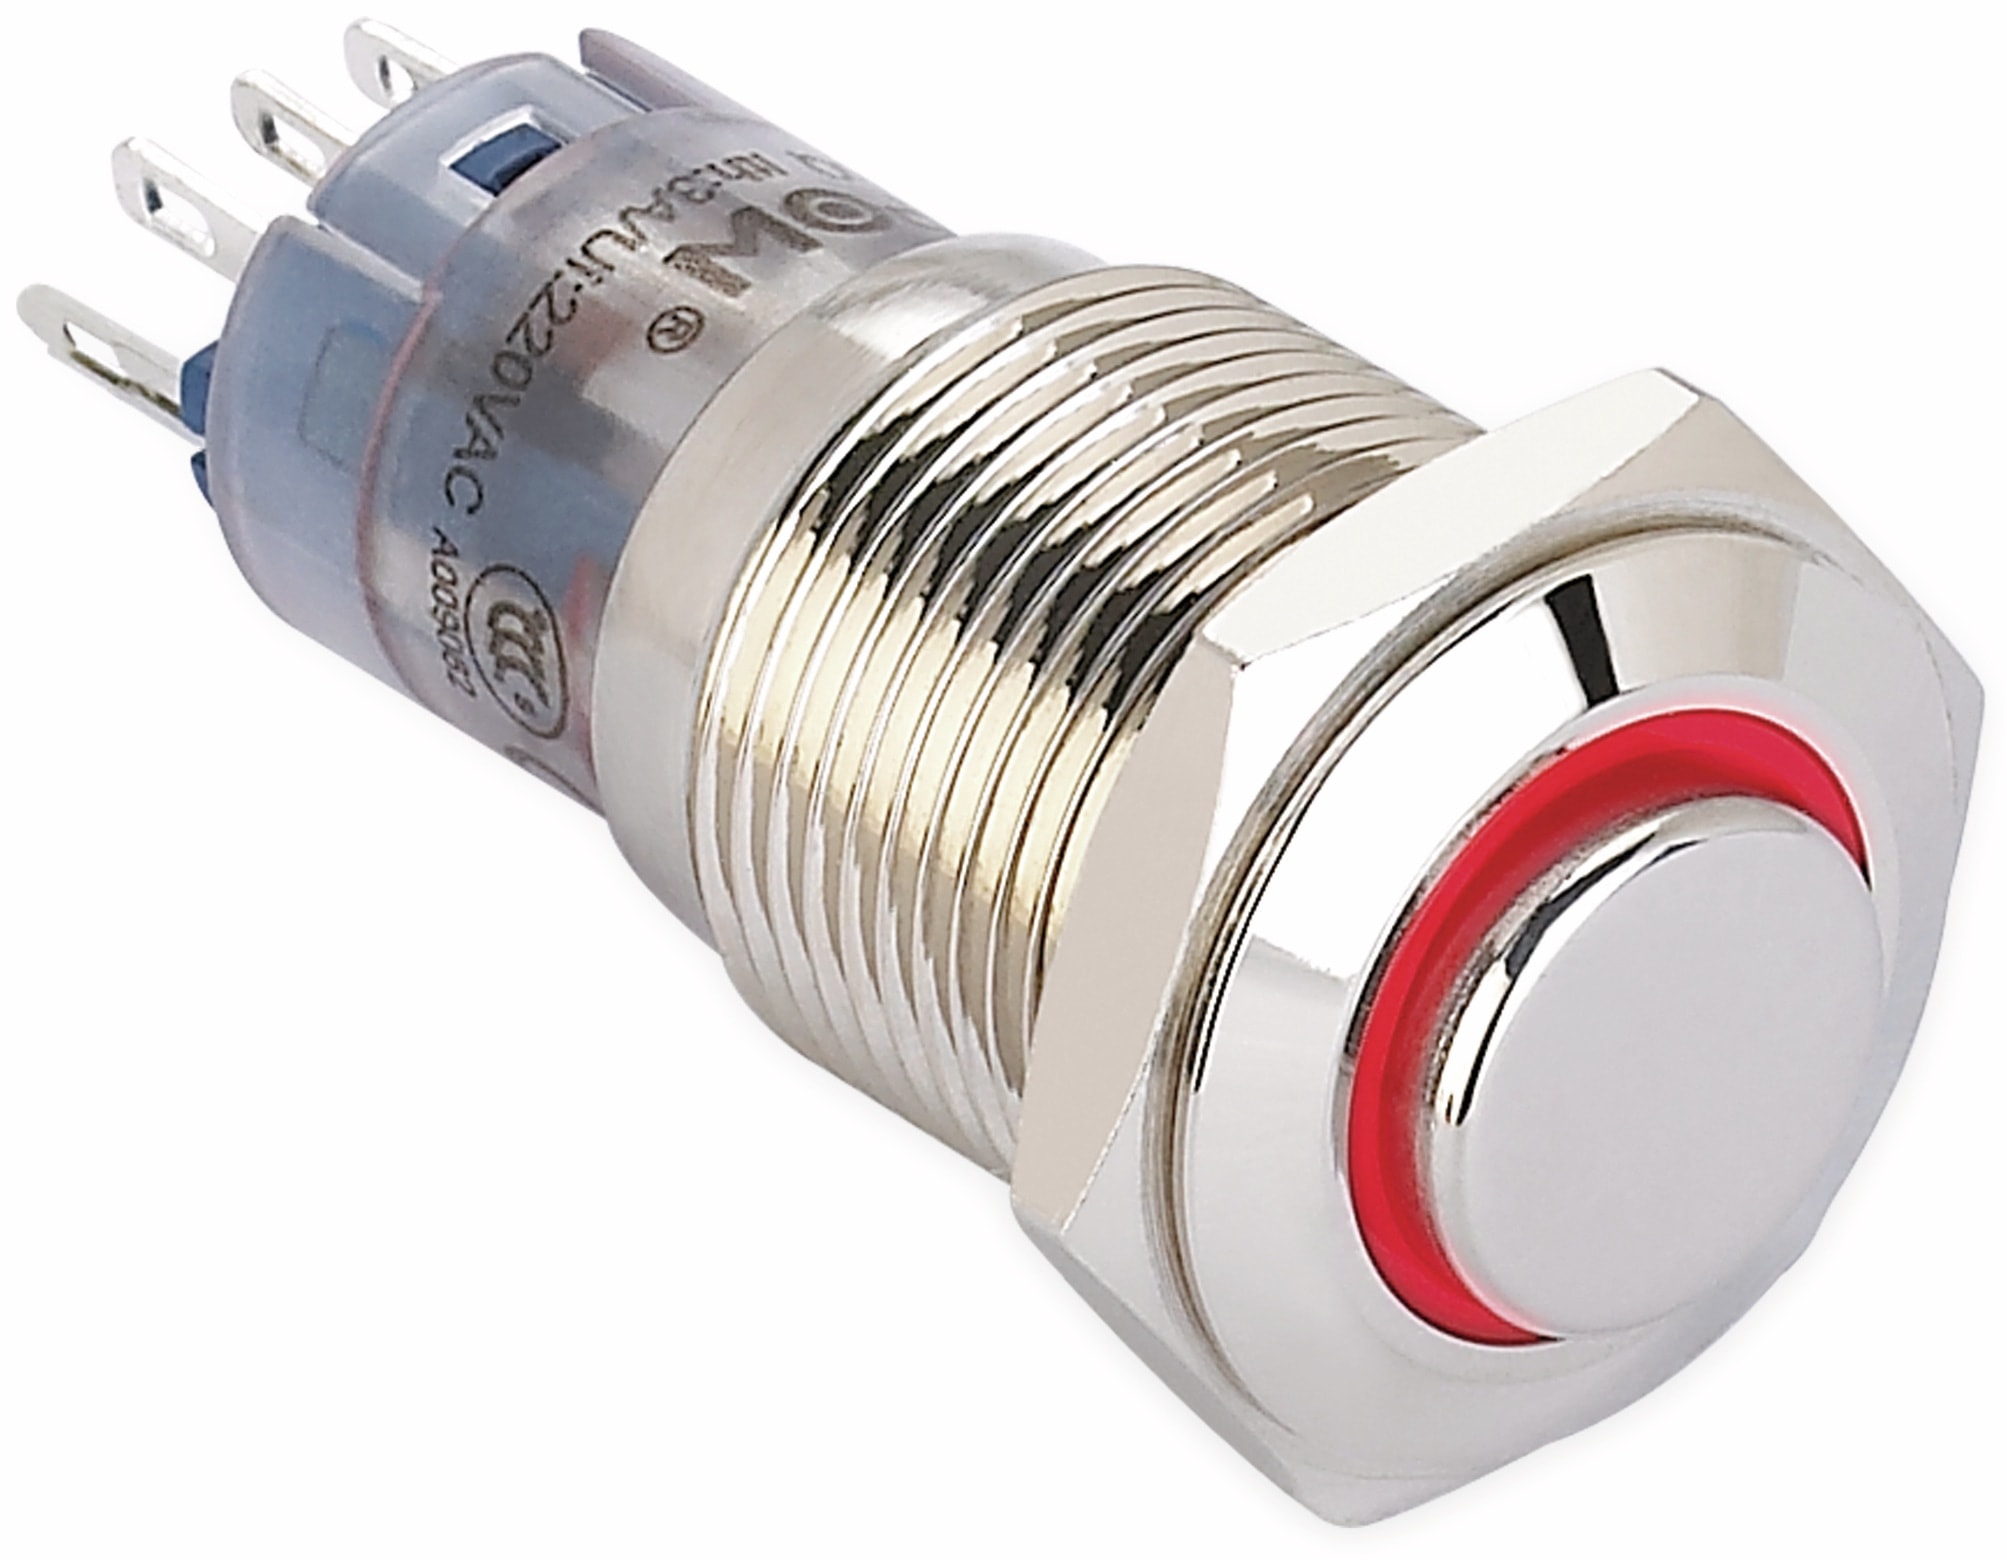 ONPOW Schalter, 24 V/DC, 1x Off/On, Beleuchtung rot, Lötanschluss, erhaben rund, Messing, 16 mm